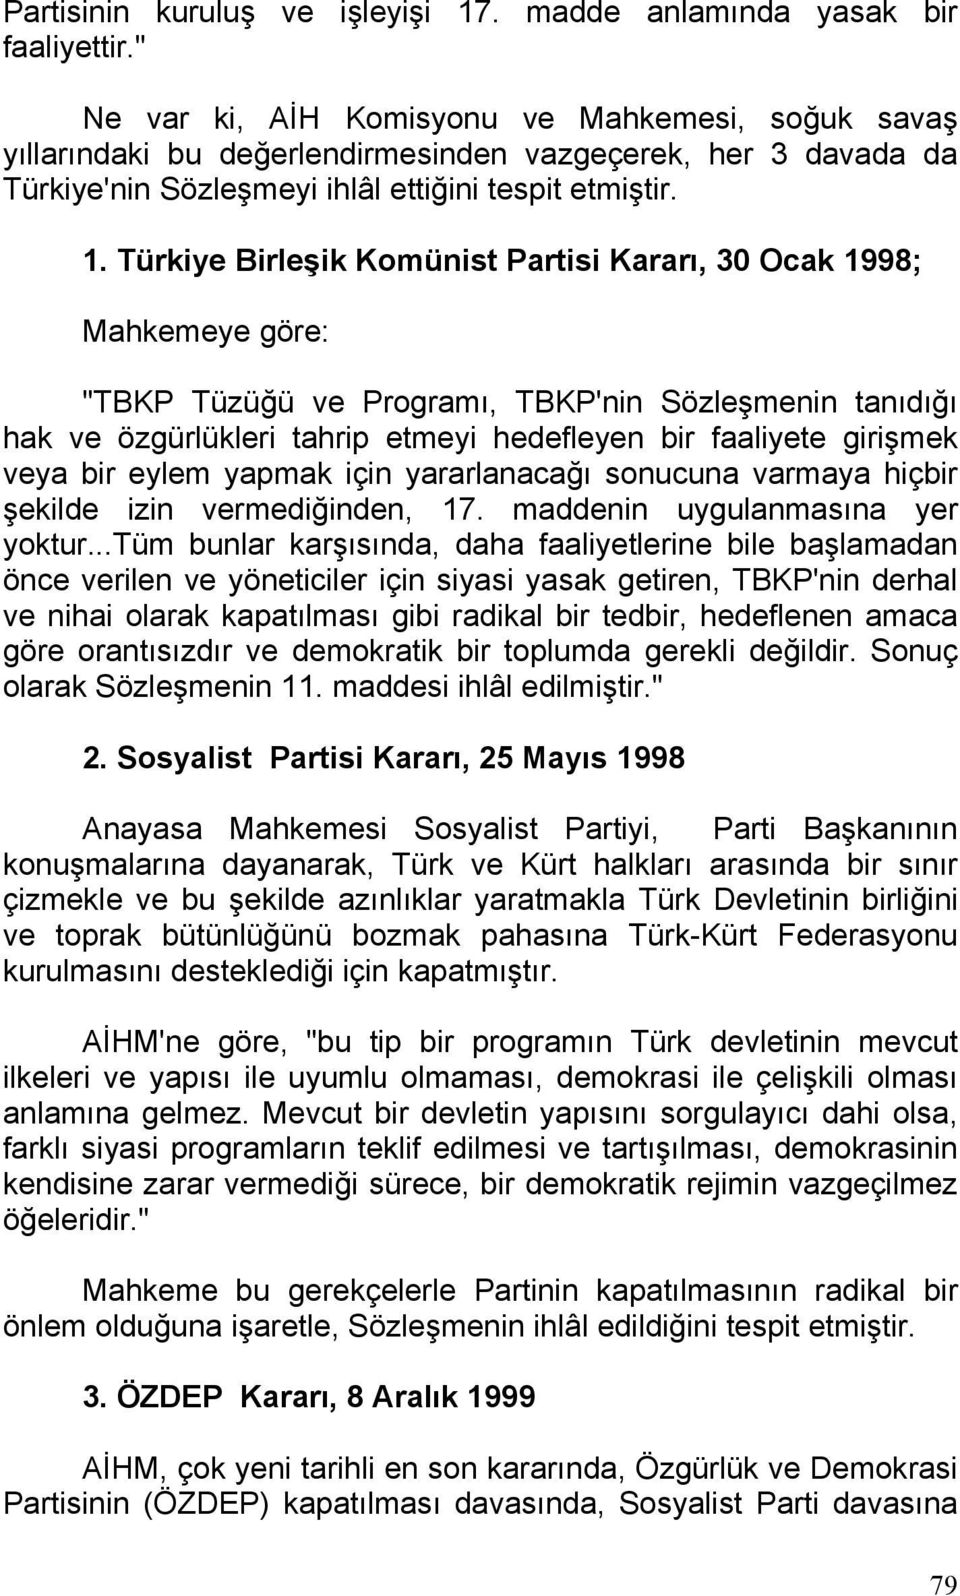 Türkiye Birleşik Komünist Partisi Kararı, 30 Ocak 1998; Mahkemeye göre: "TBKP Tüzüğü ve Programı, TBKP'nin Sözleşmenin tanıdığı hak ve özgürlükleri tahrip etmeyi hedefleyen bir faaliyete girişmek